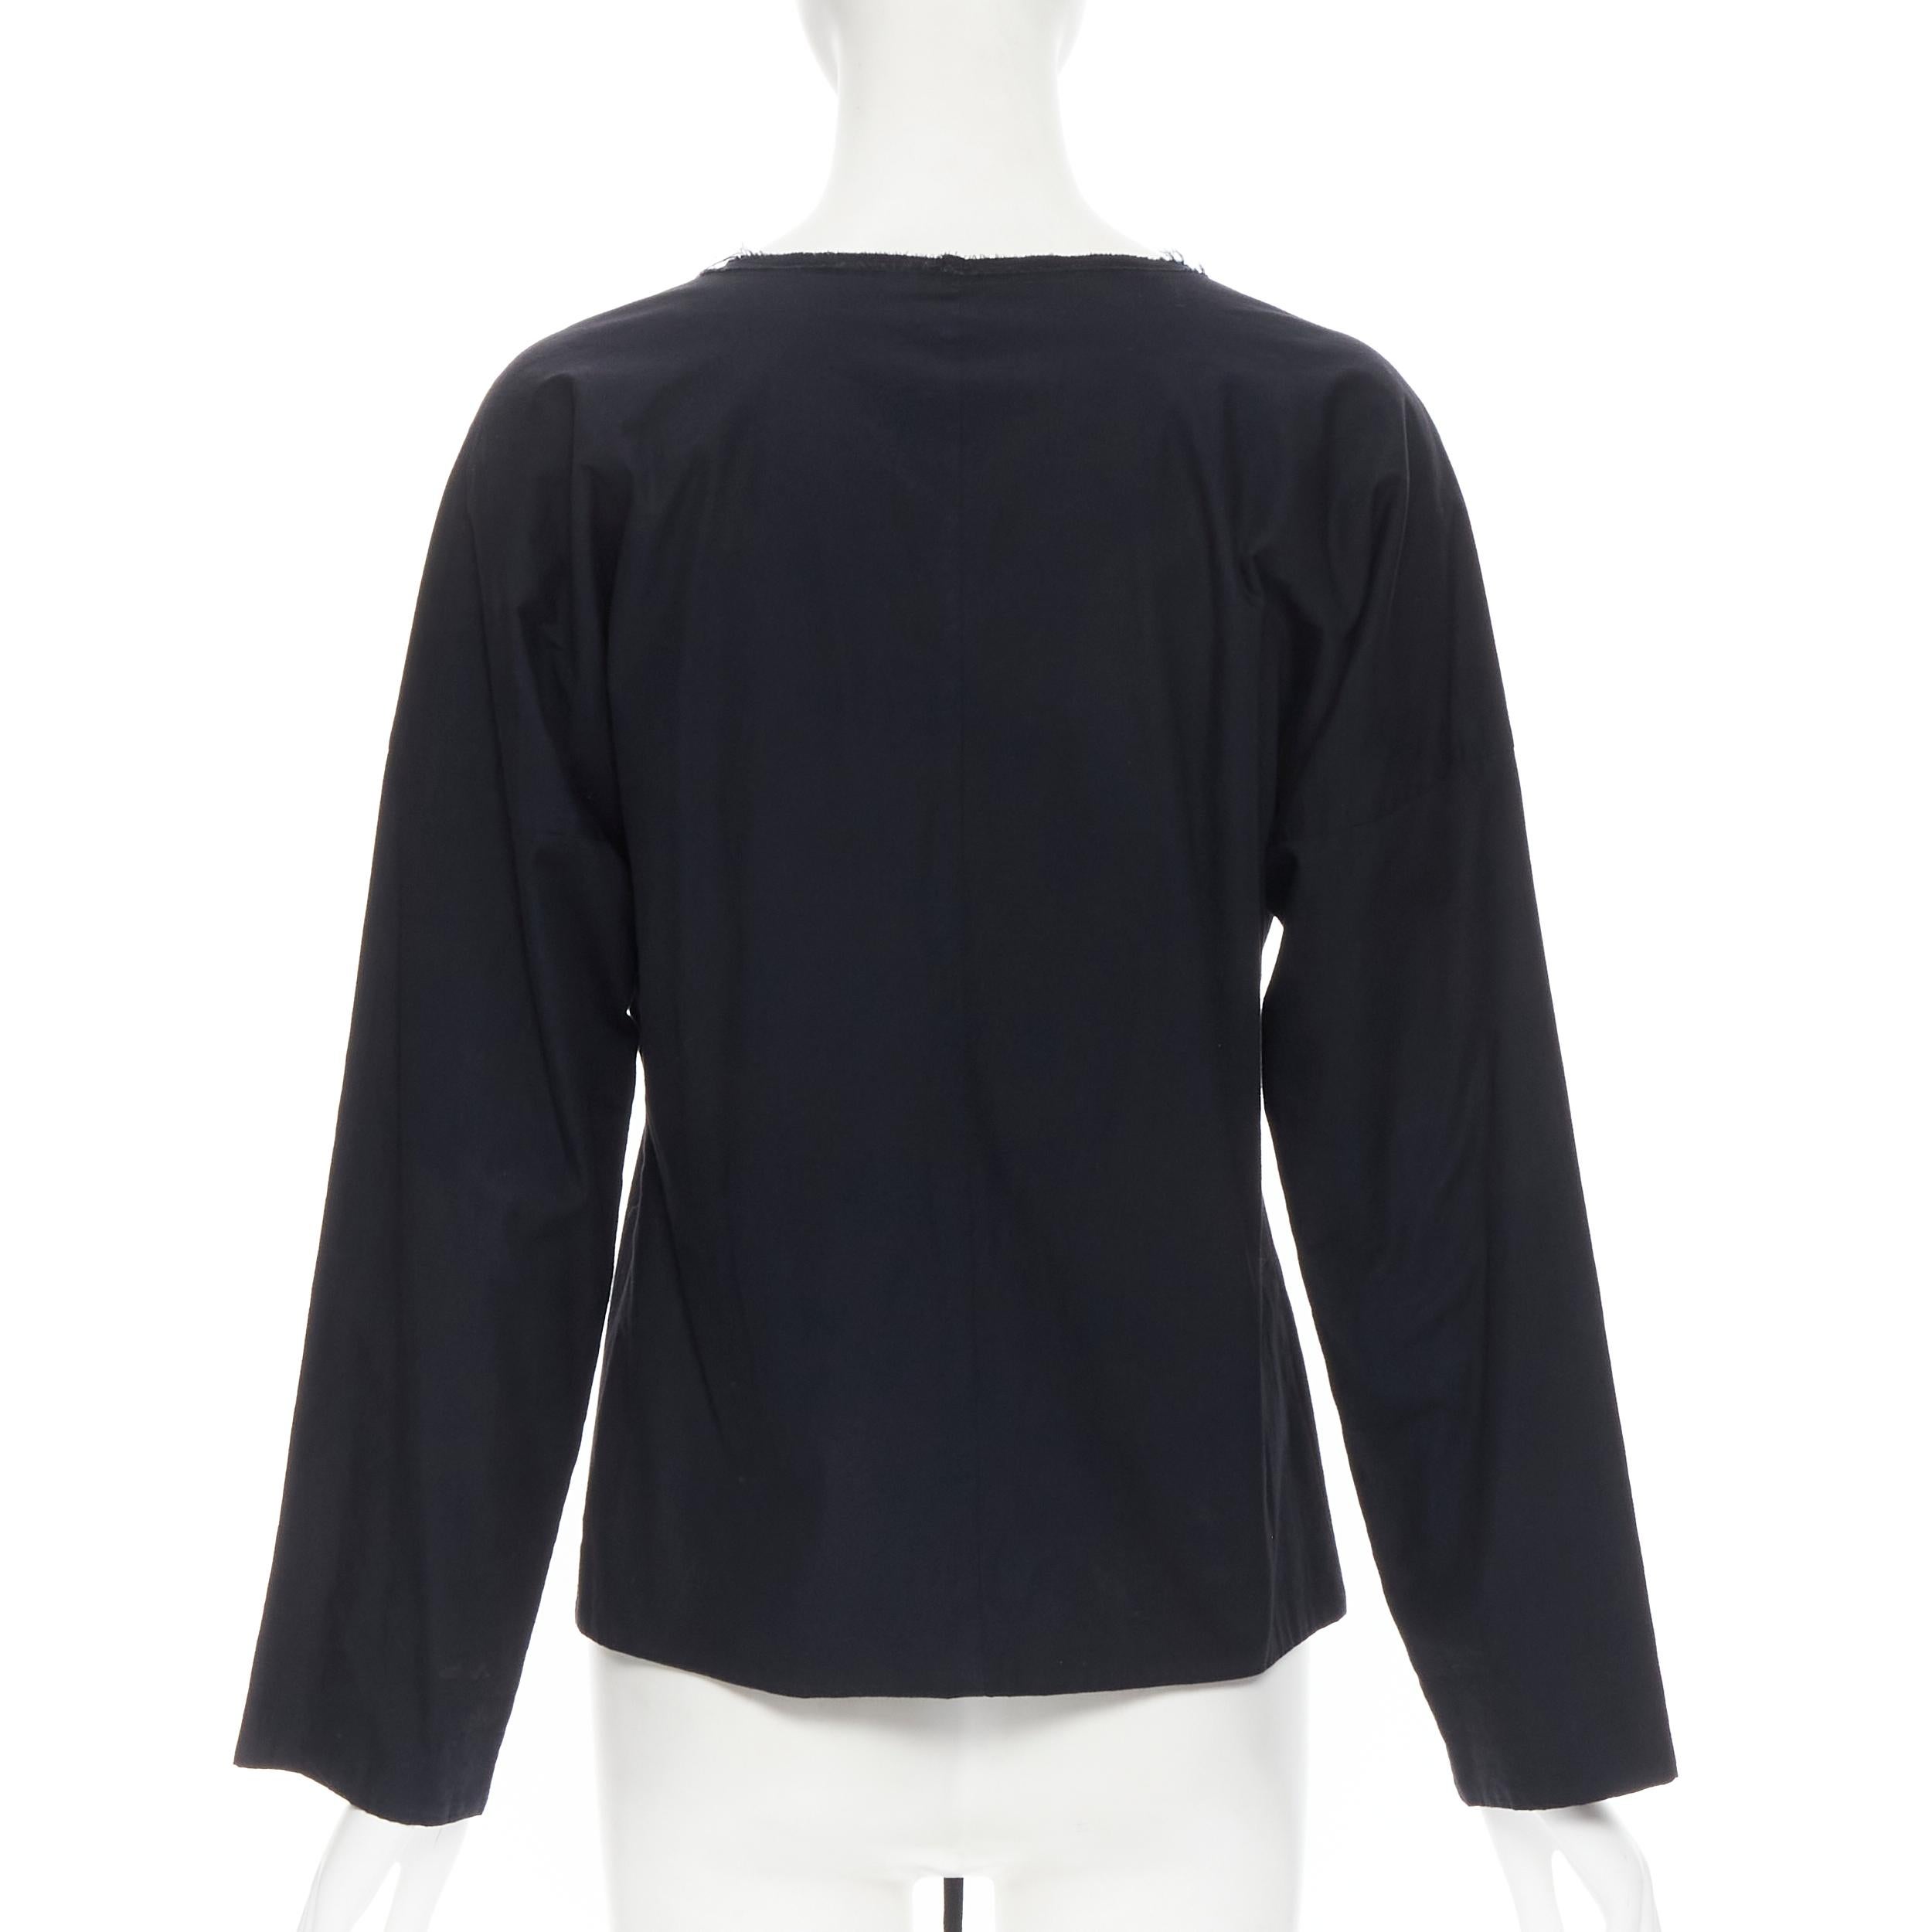 Women's vintage TRICOT COMME DES GARCONS 1997 black draped button tie waist shirt M